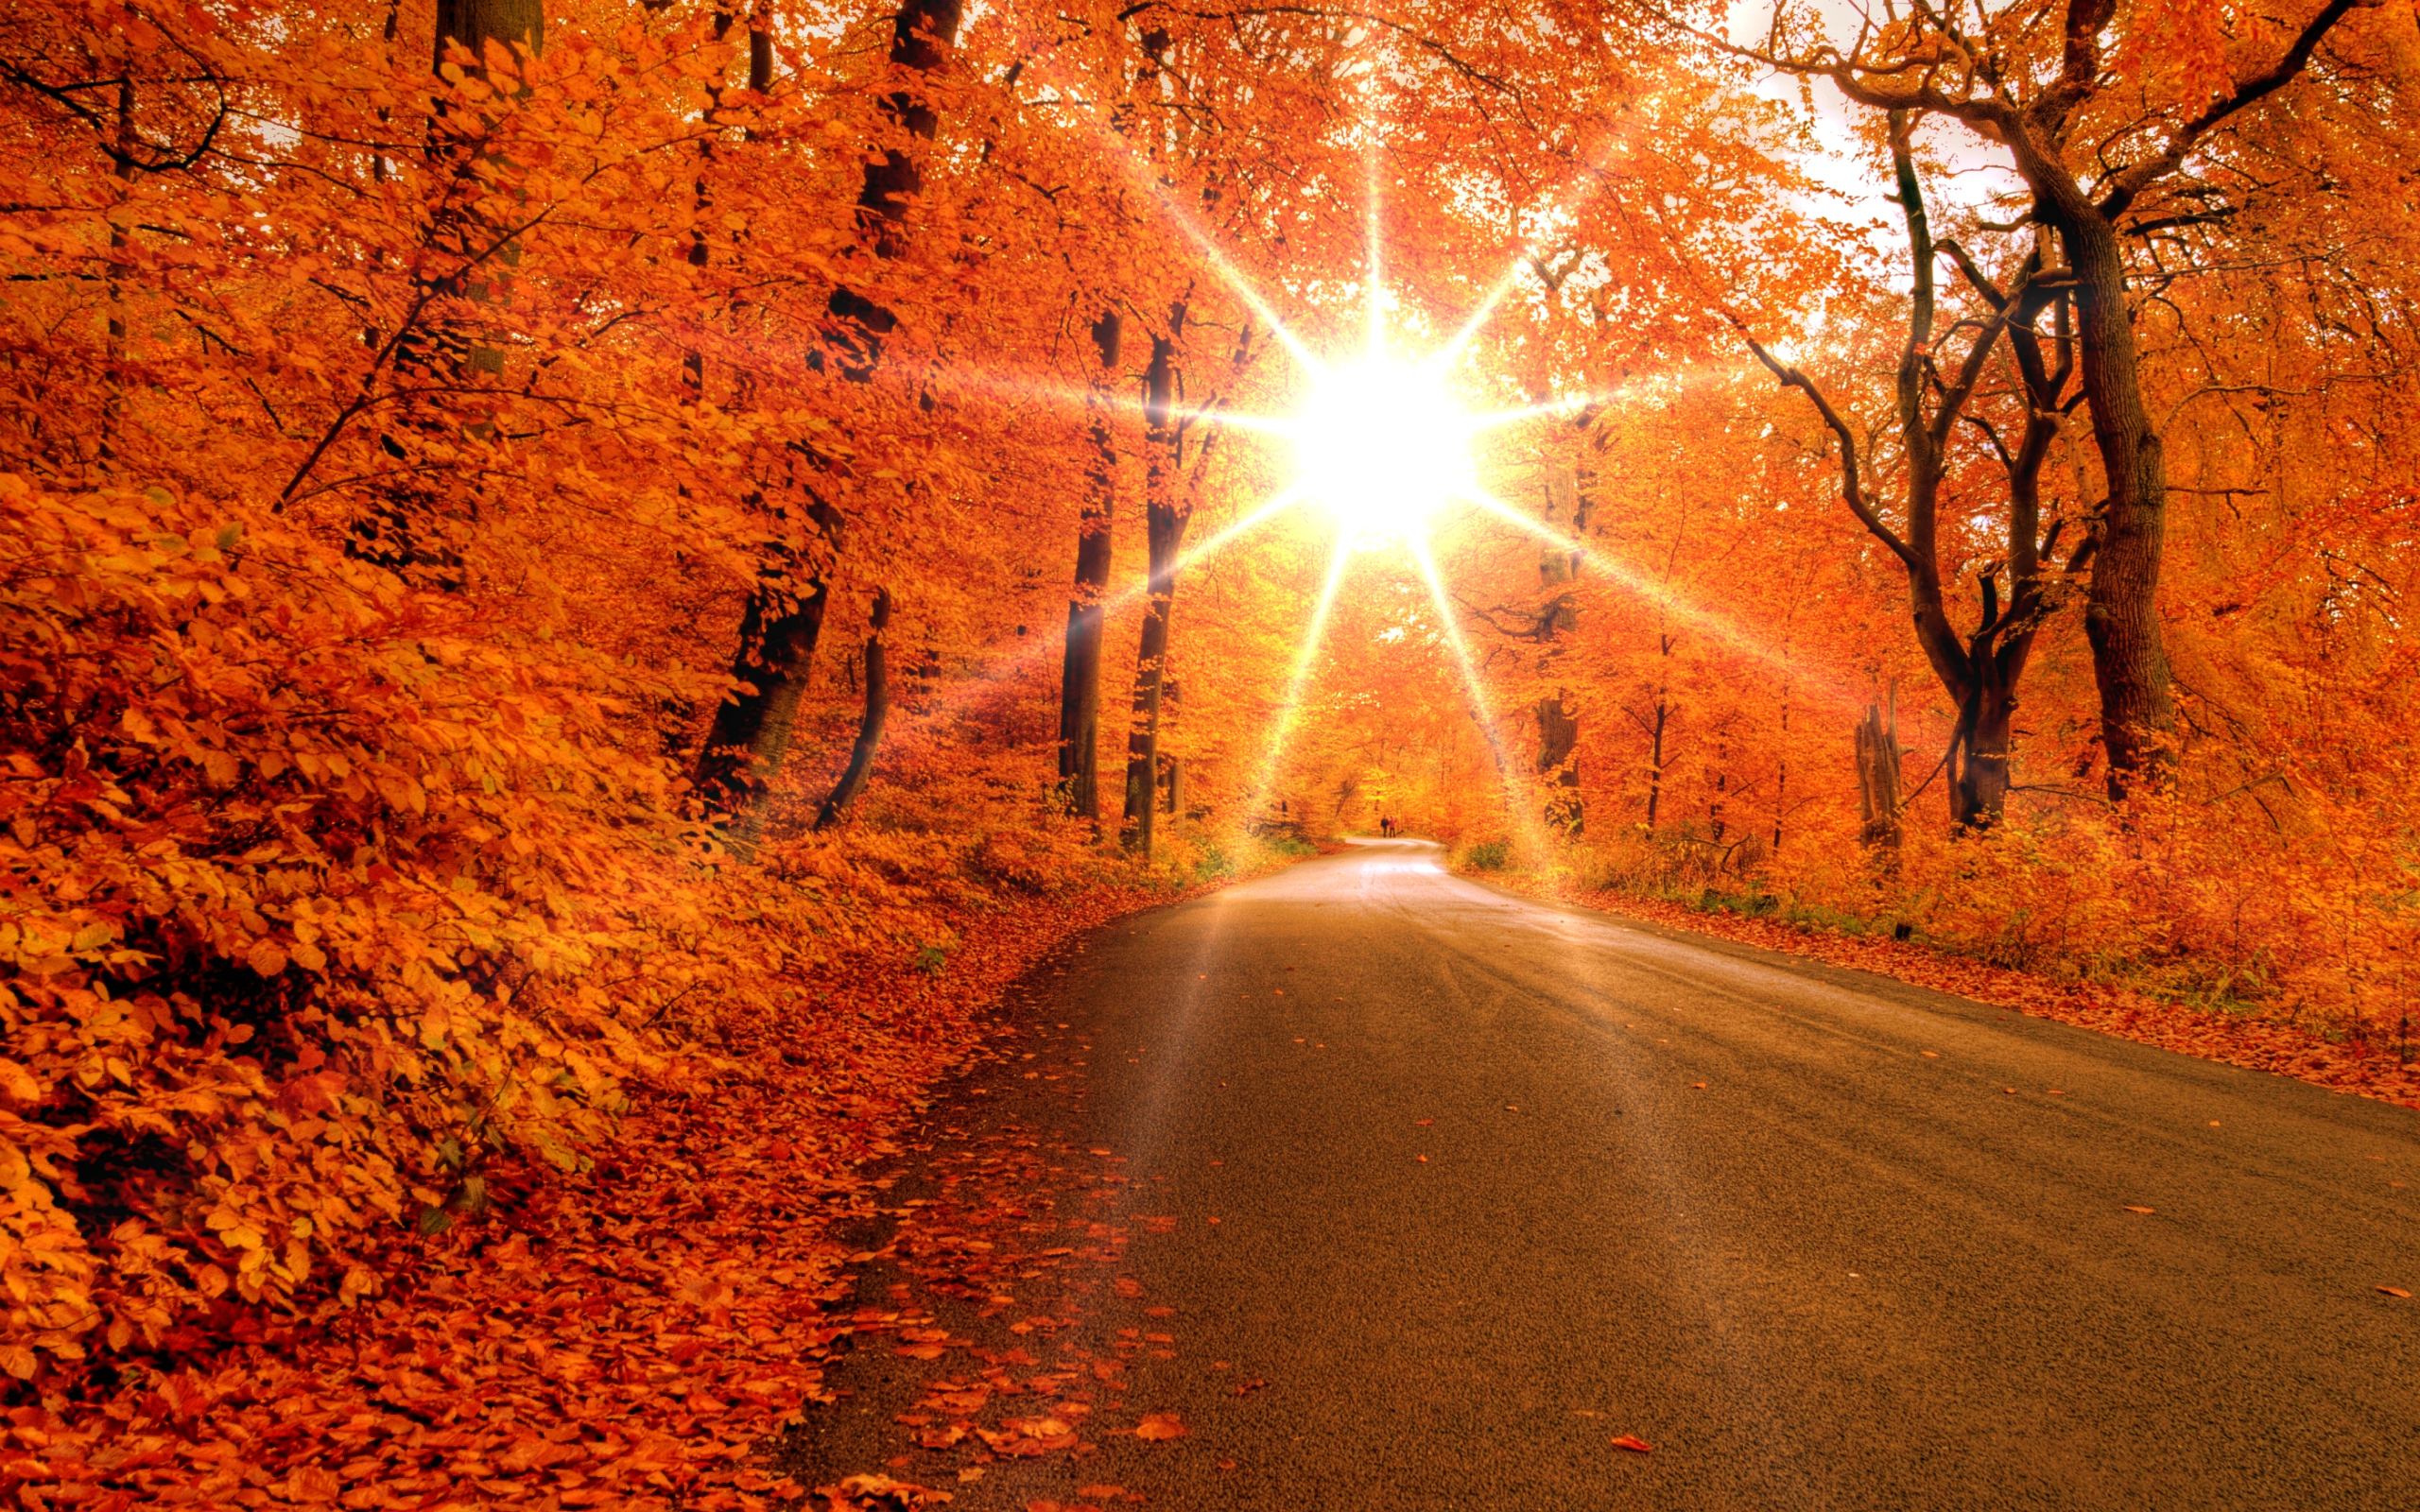 золотая осень, природа, солнечные лучи, дорога, деревья, кусты, опавшие листья, обои, Golden autumn, nature, sunrays, road, trees, bushes, fallen leaves, wallpaper